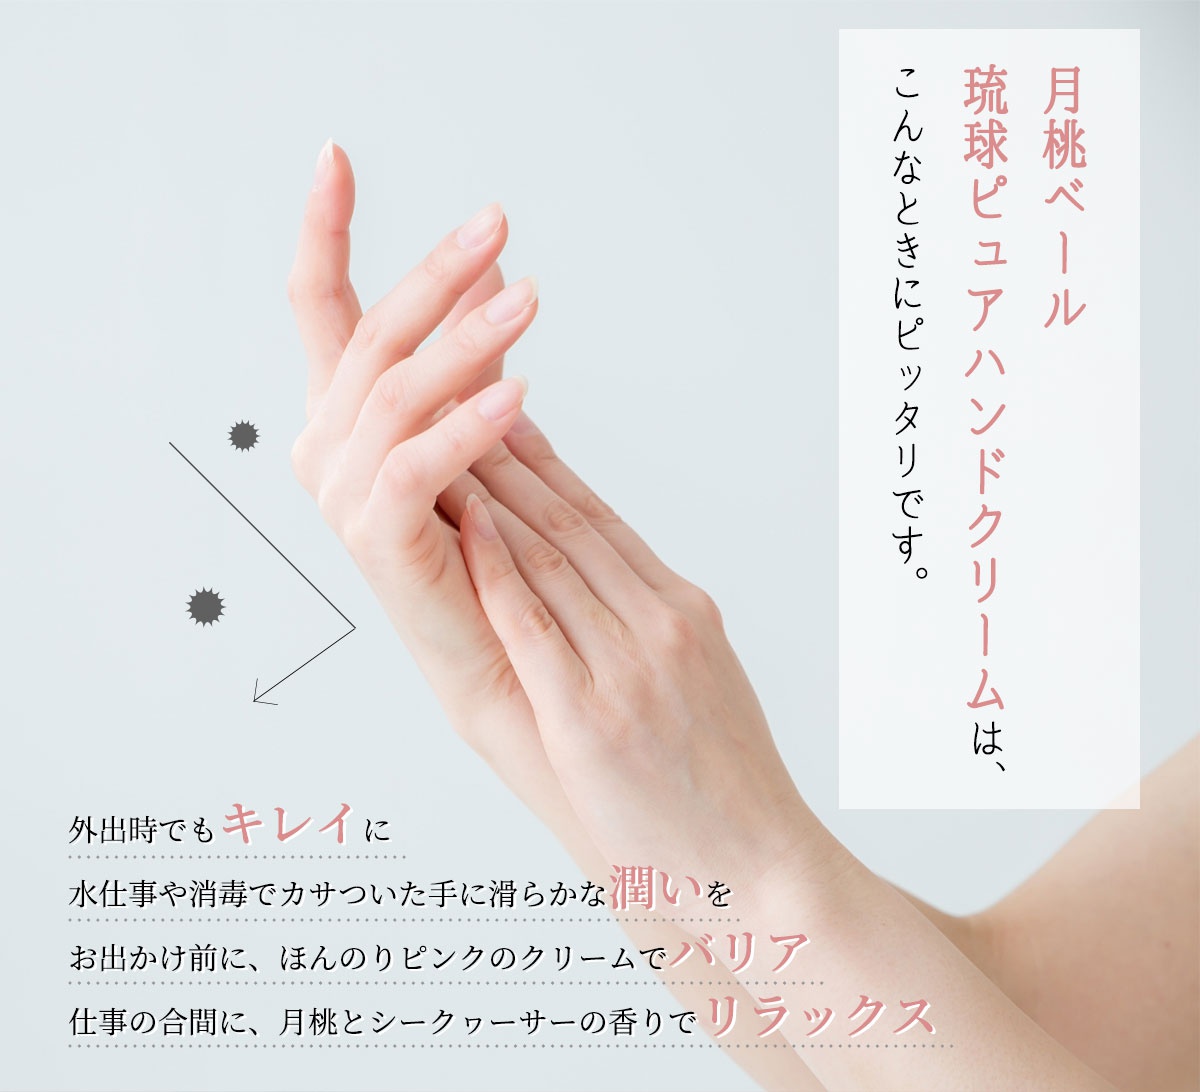 しまのや 月桃ベール 琉球ピュアハンドクリームの商品画像サムネ3 